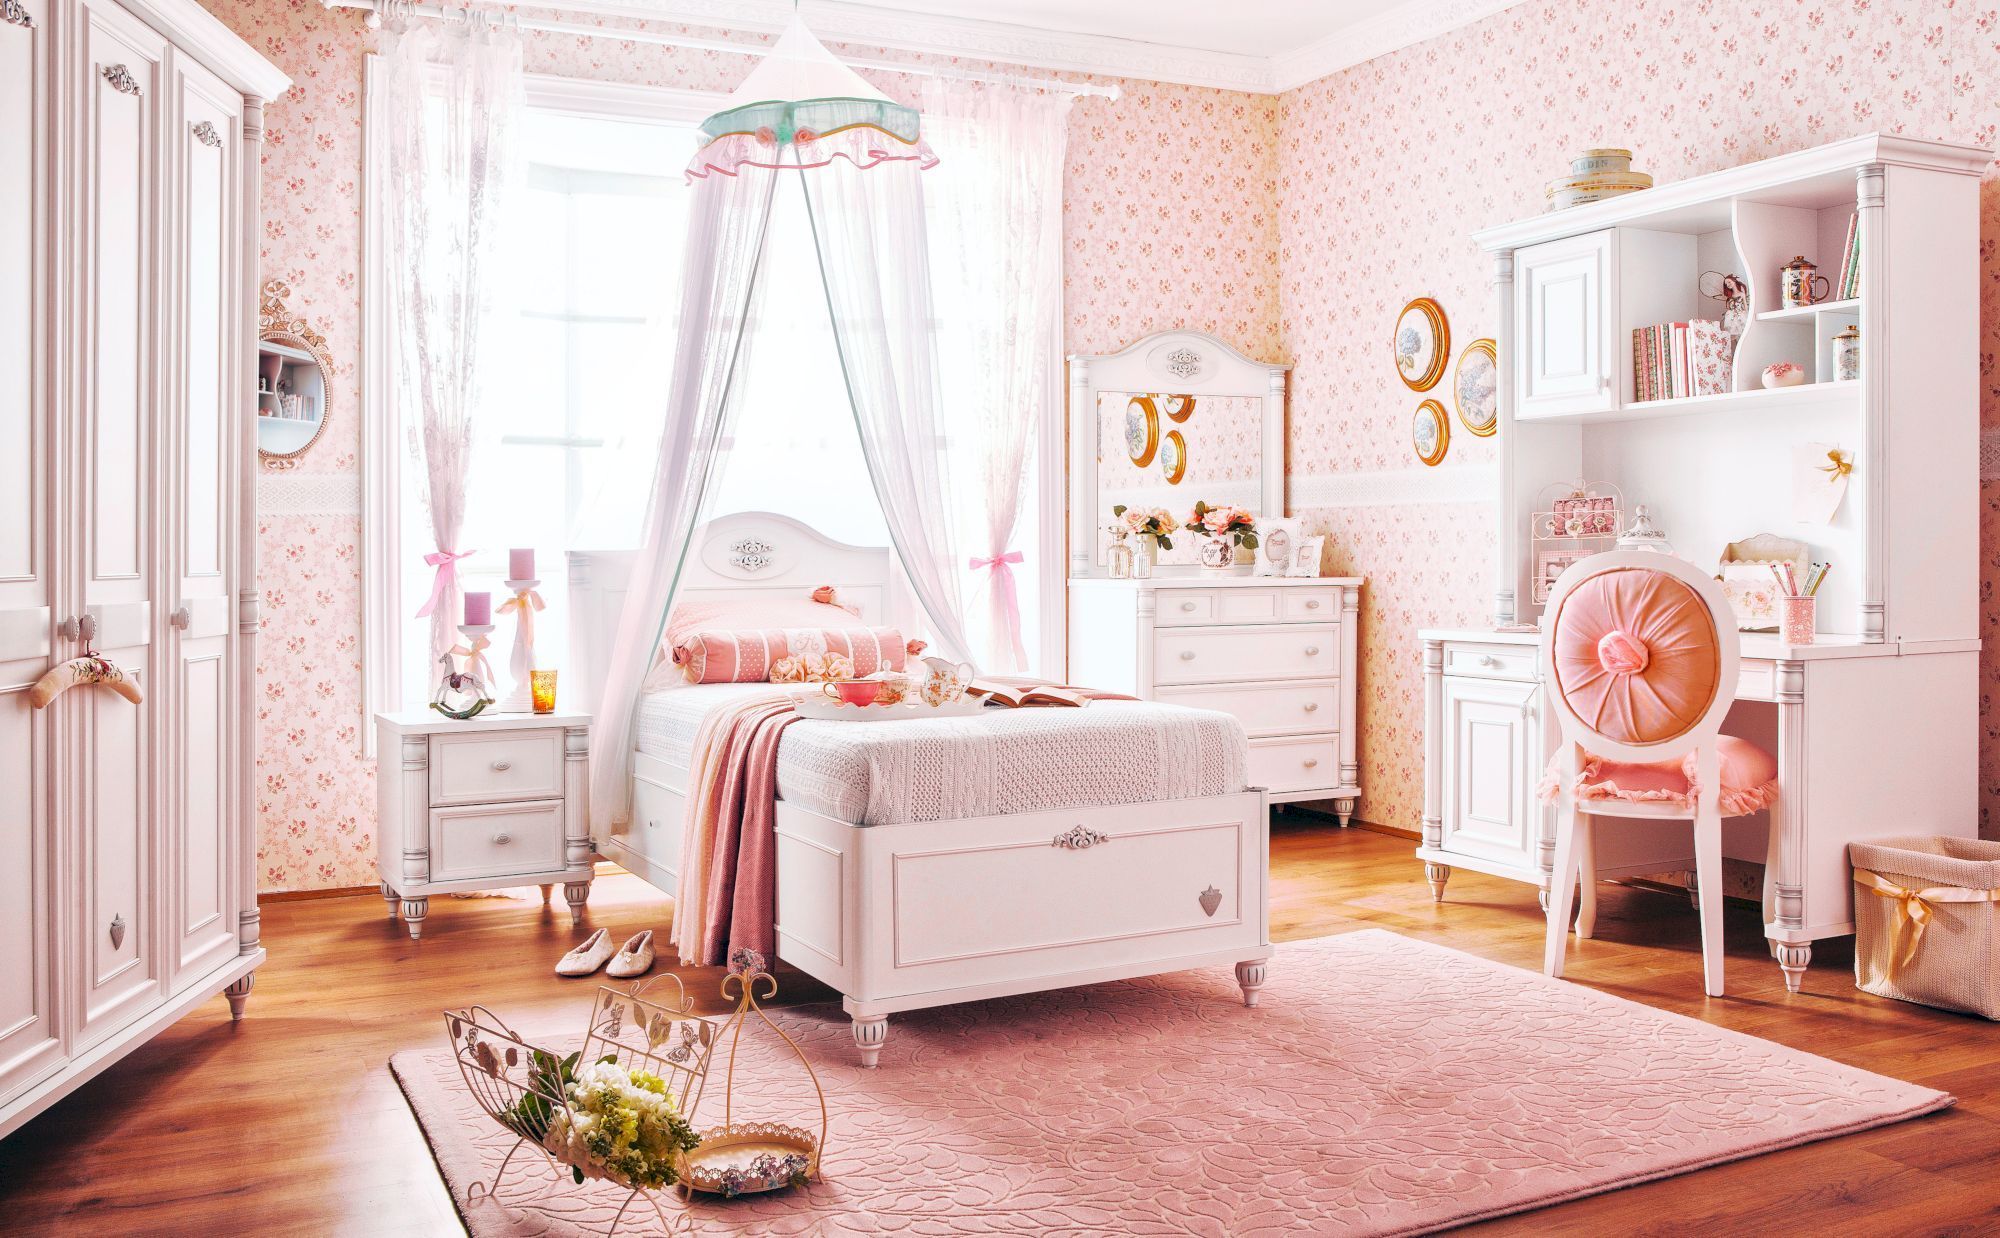 Sắc hồng tuyệt đẹp cho cô bé yêu thích sự mộng mơ trong căn phòng ngủ cổ điển này